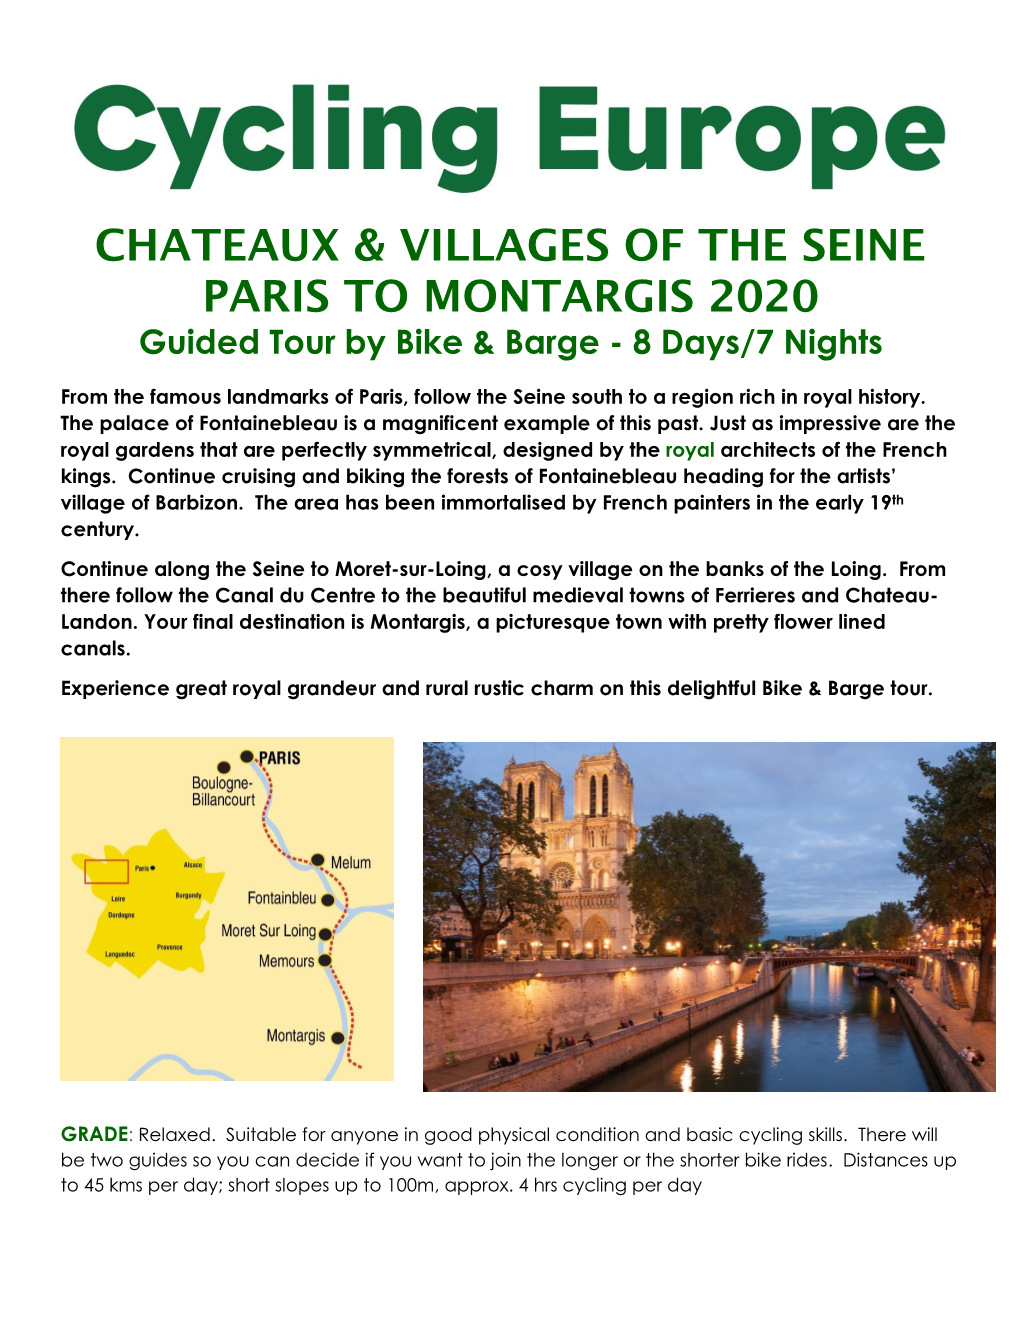 Chateaux & Villages of the Seine Paris to Montargis 2020